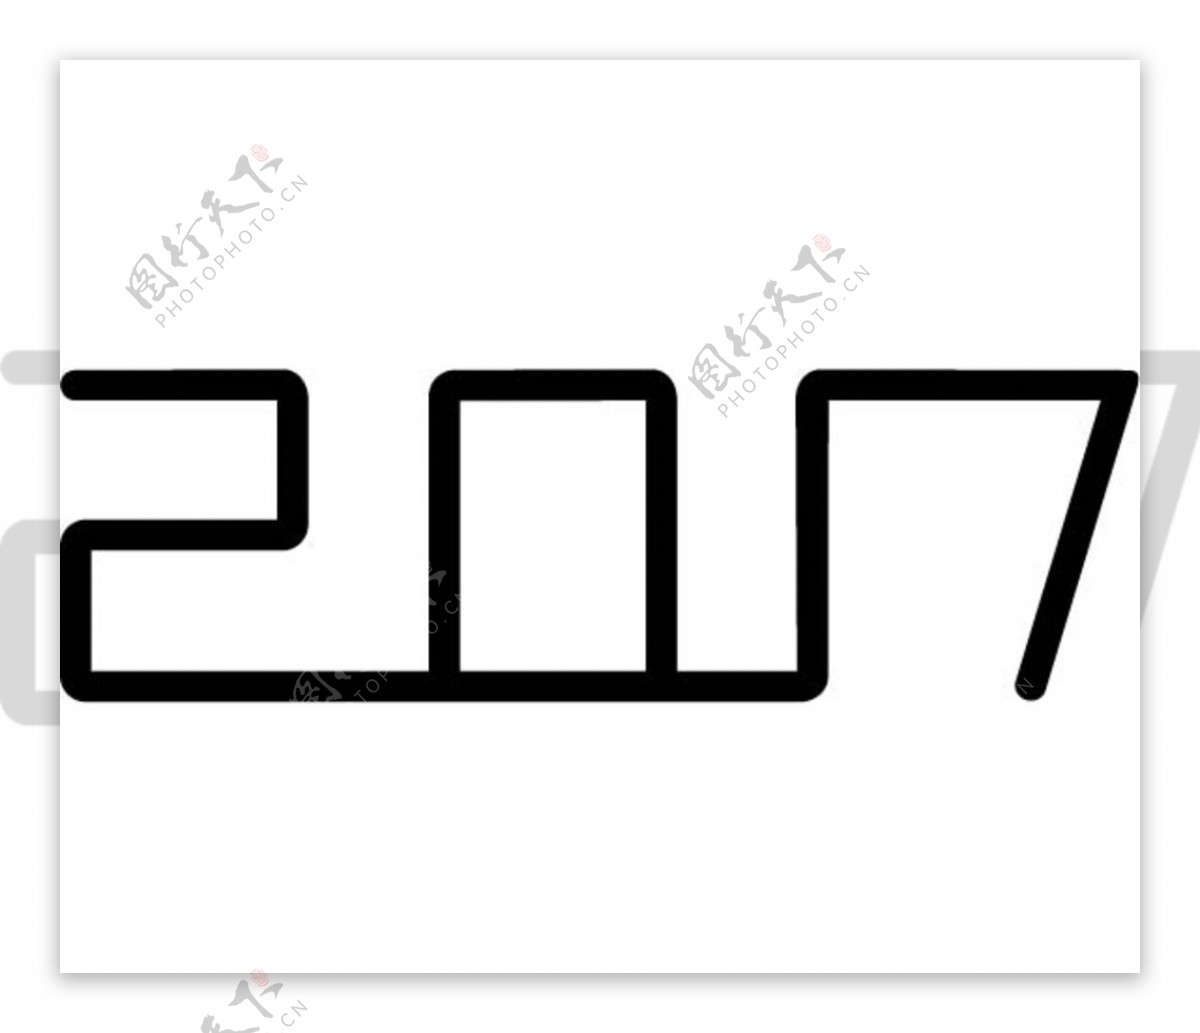 2017字体设计